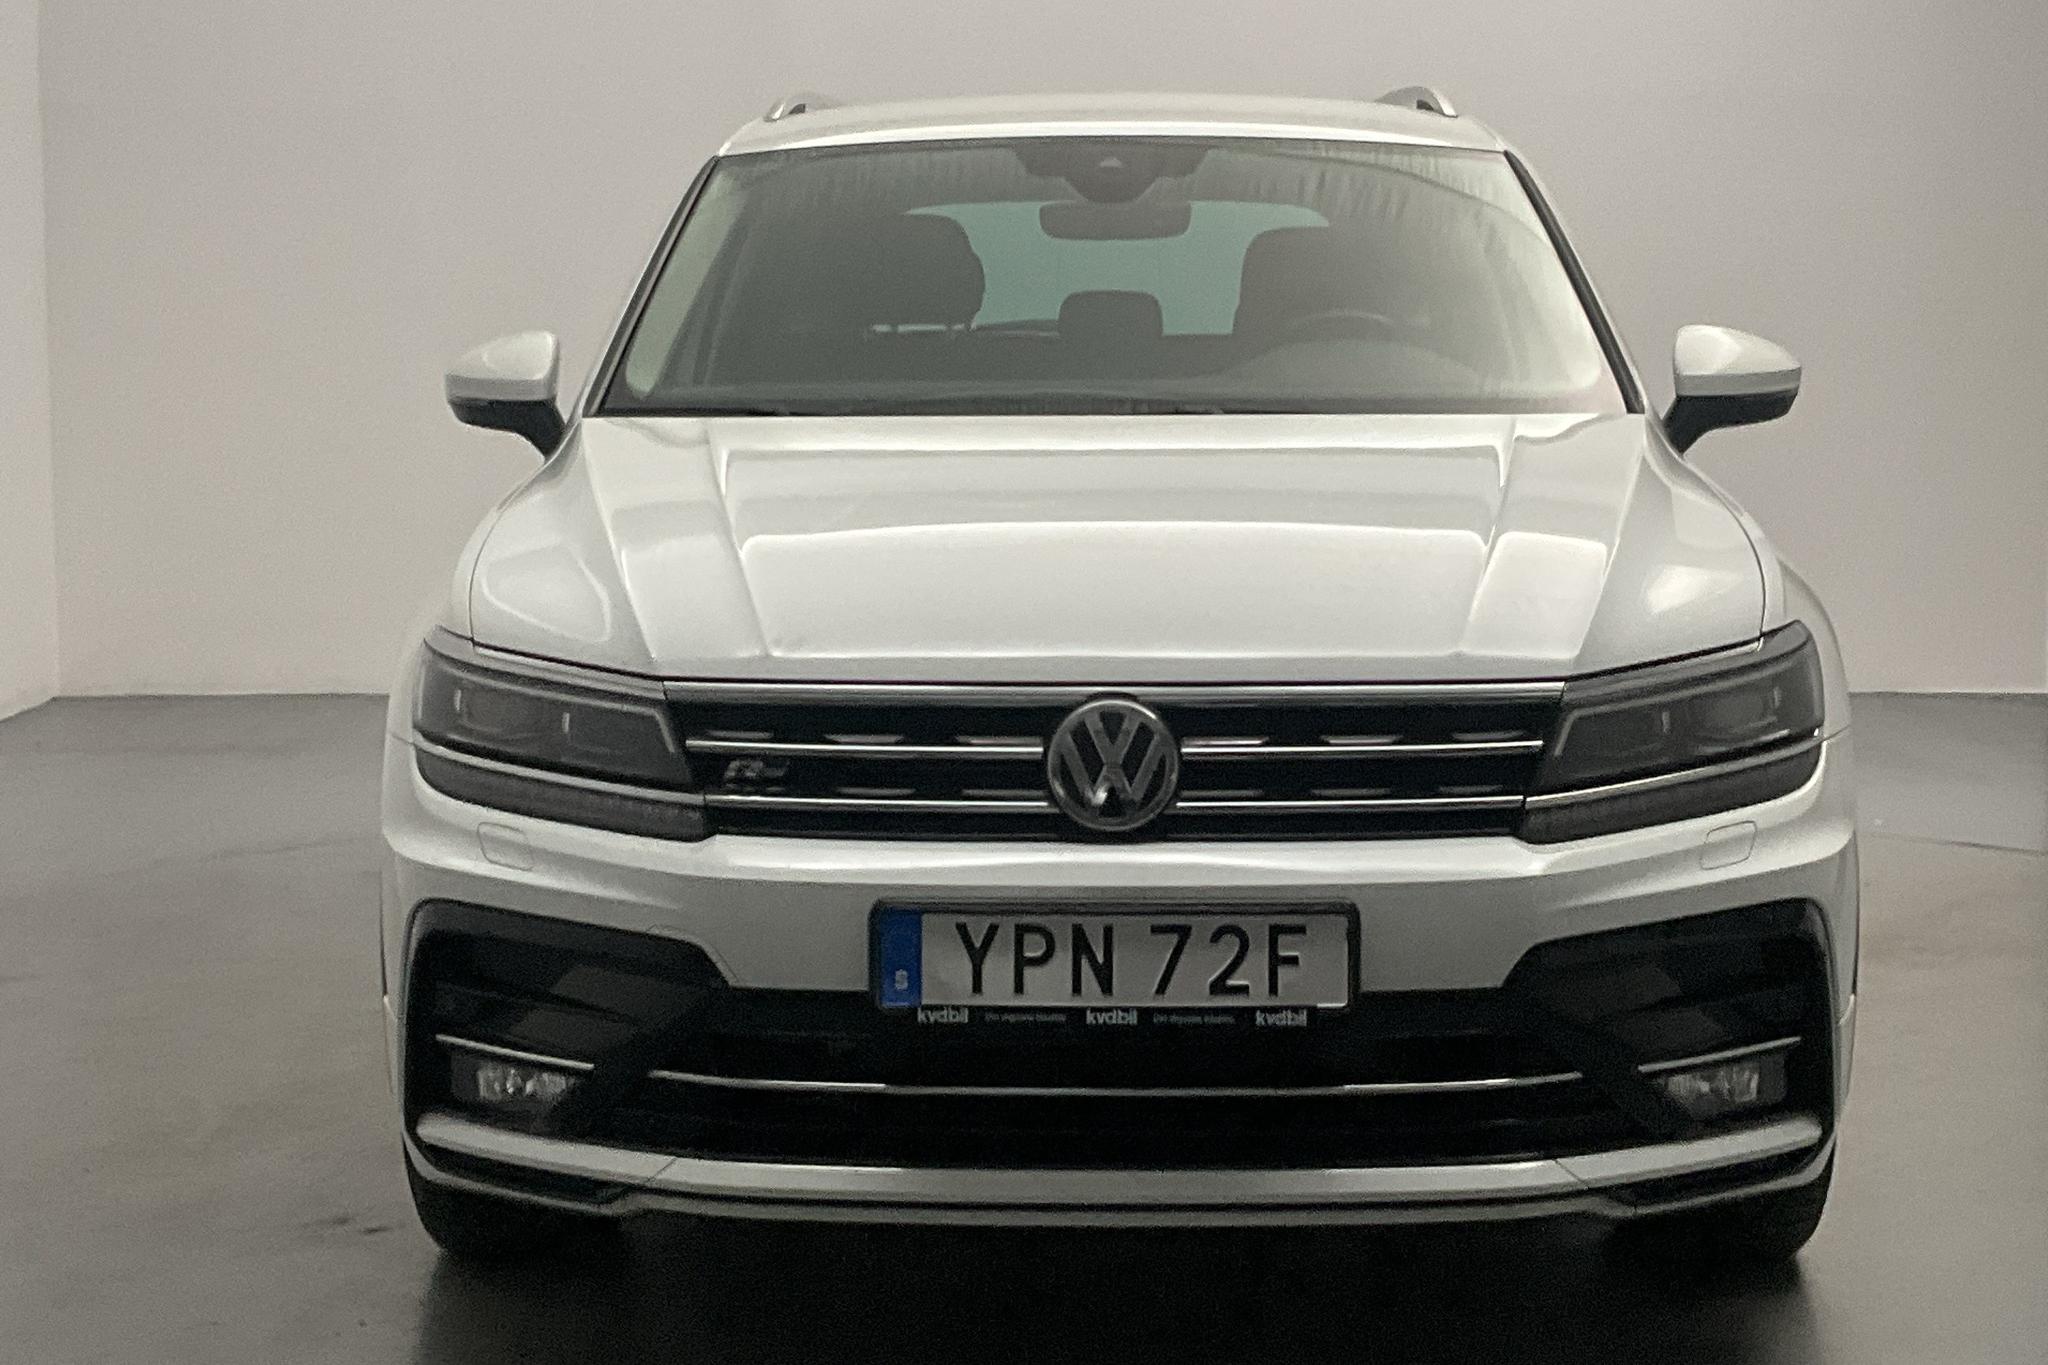 VW Tiguan 2.0 TDI 4MOTION (190hk) - 118 790 km - Automatic - white - 2020